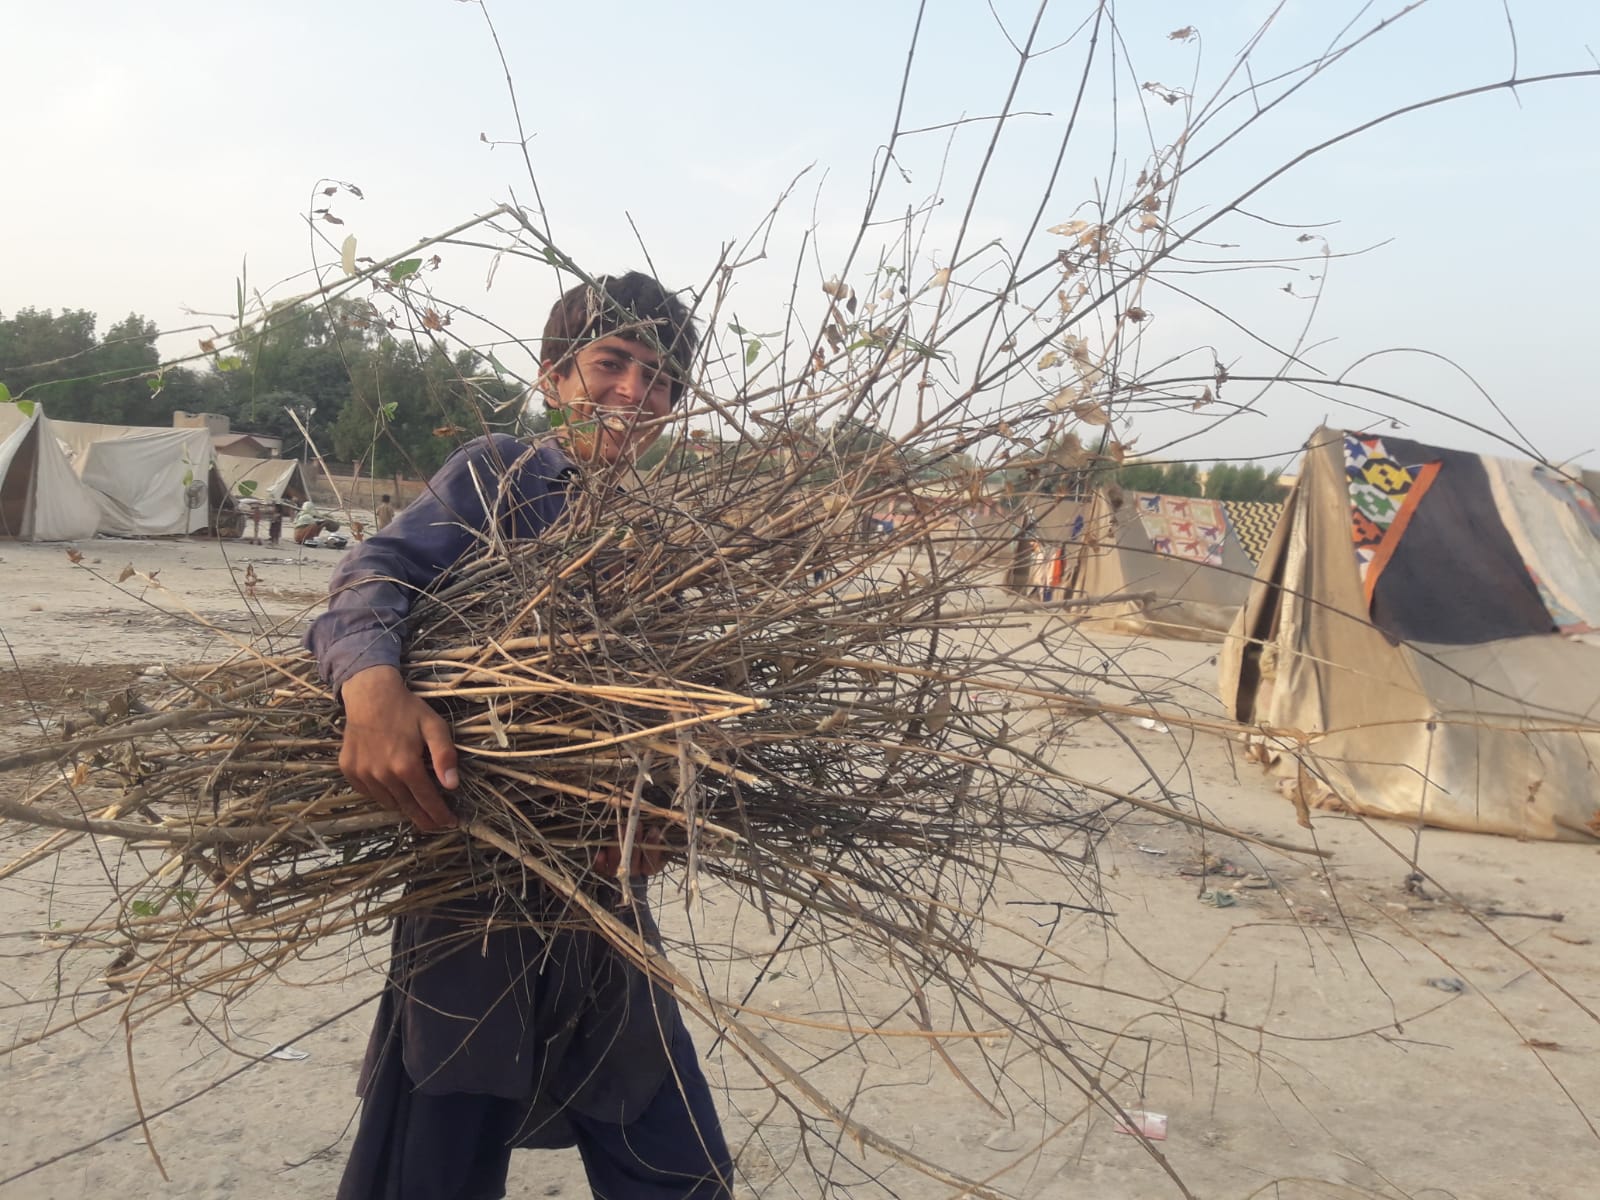 Dadu-Basket-Making-Sindh-Courier-8